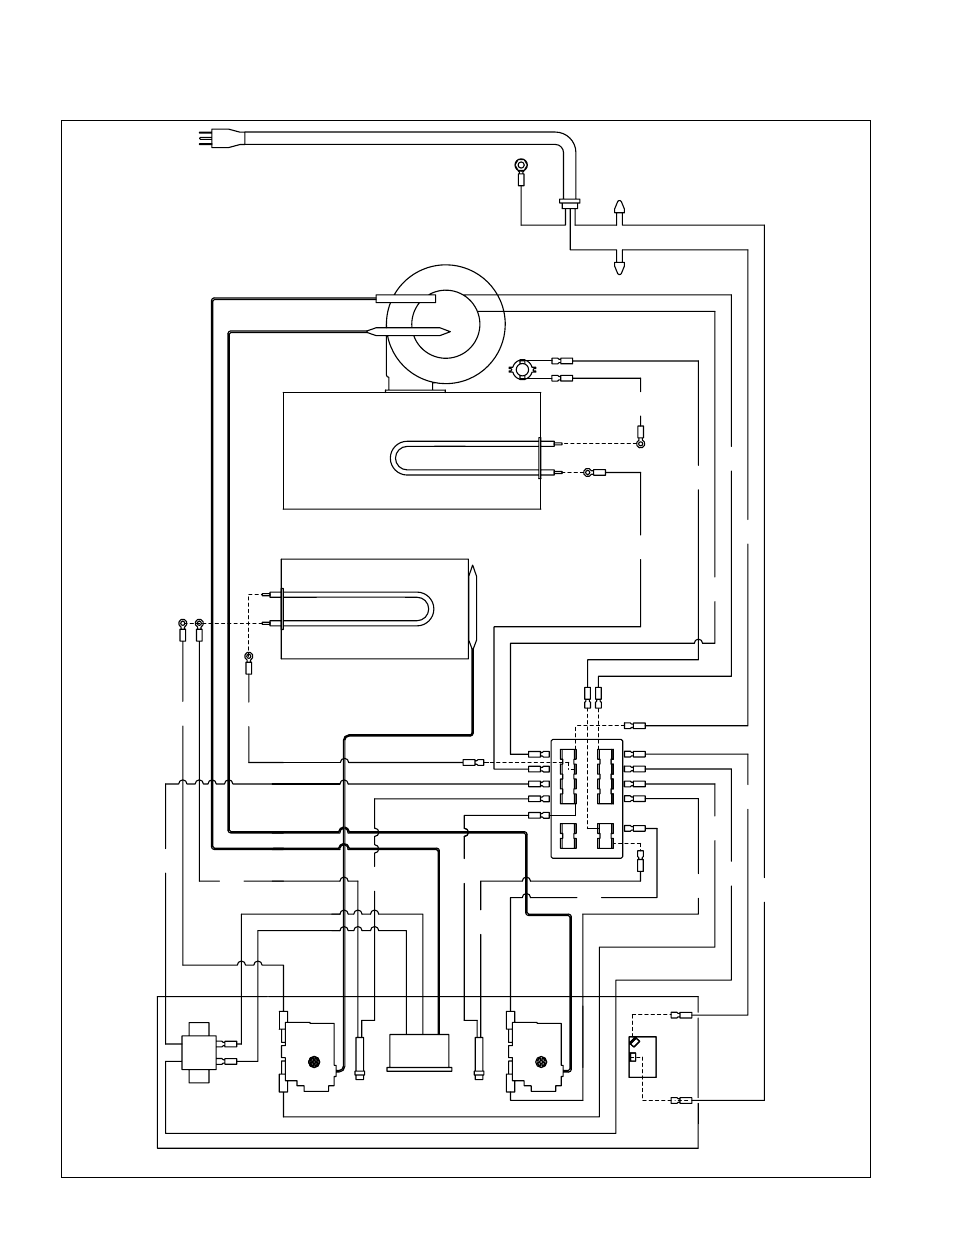 1996 Geo Metro Engine Wiring Diagram - Wiring Diagram Schema